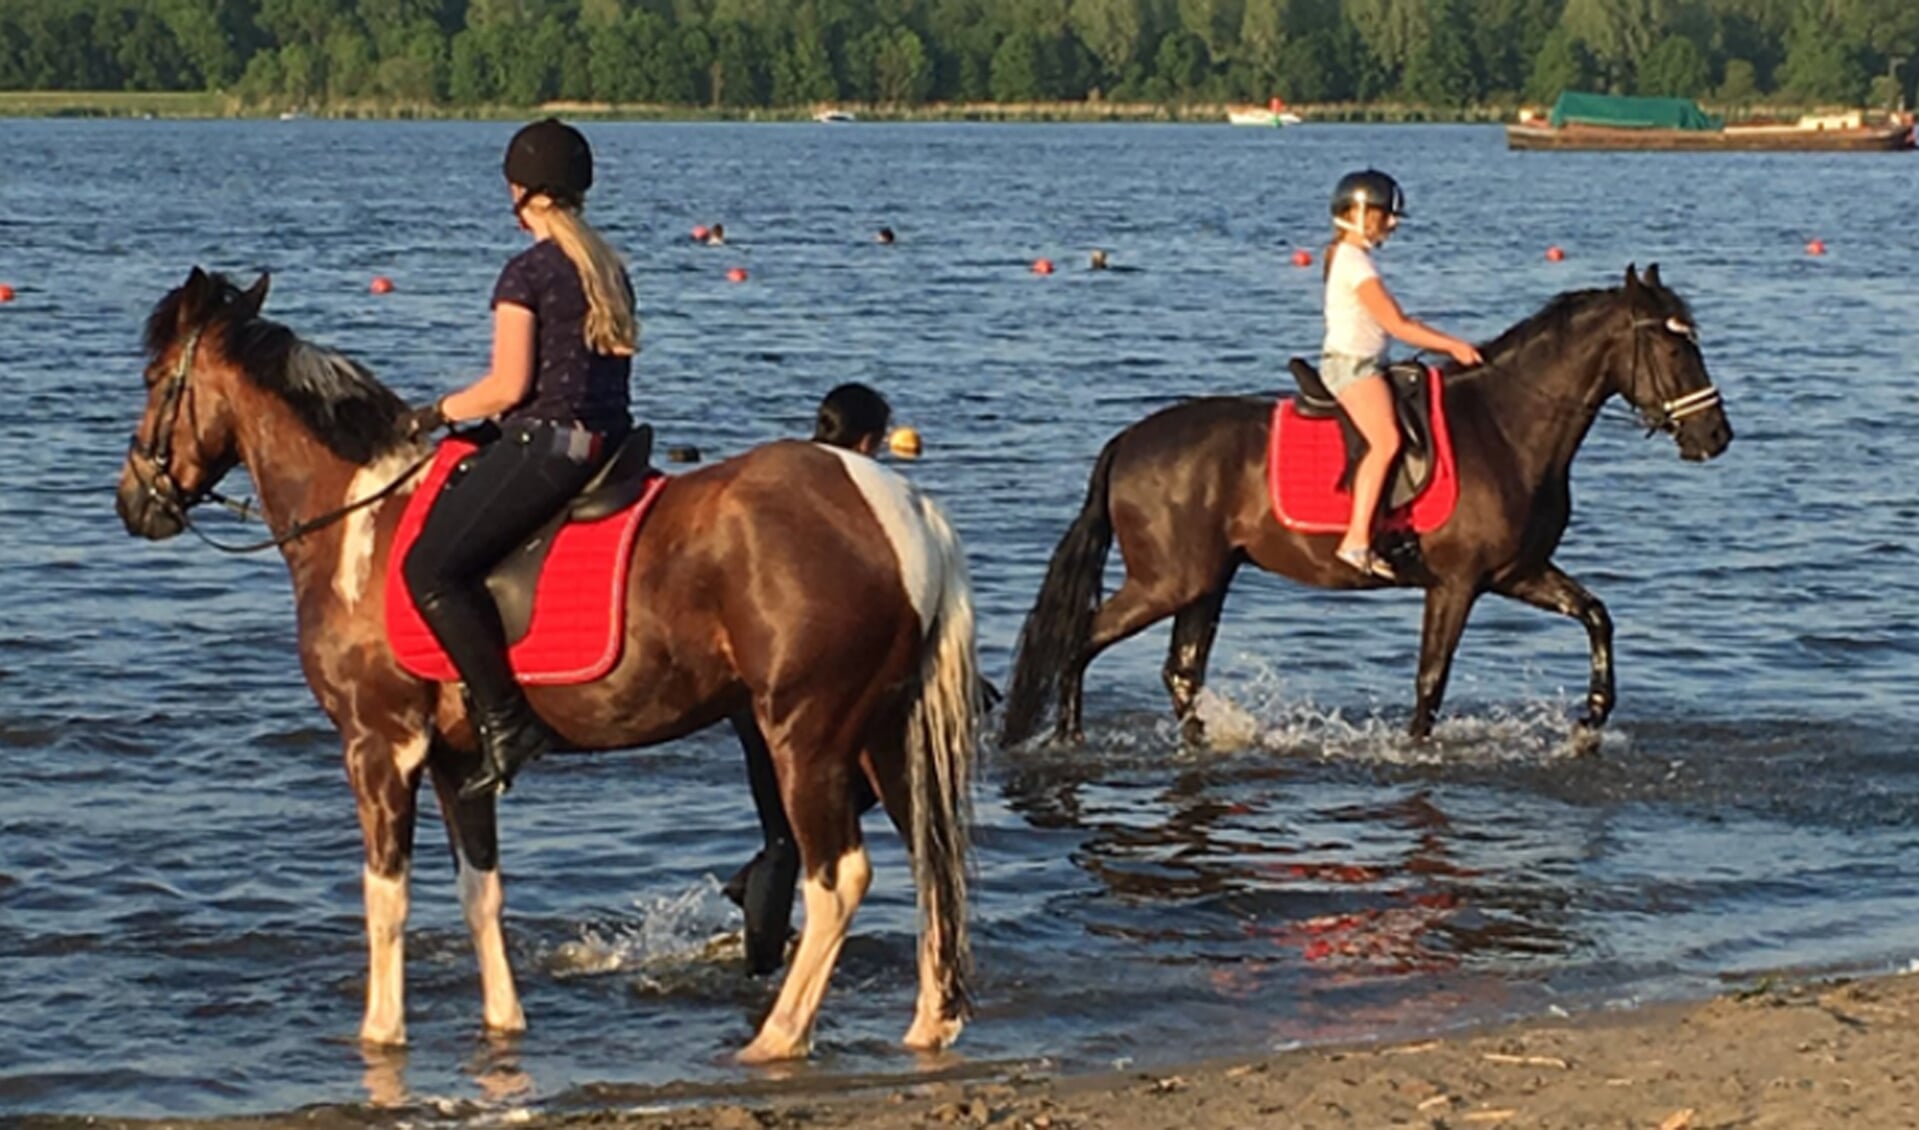 De meisjes genieten op de paardenruggen.